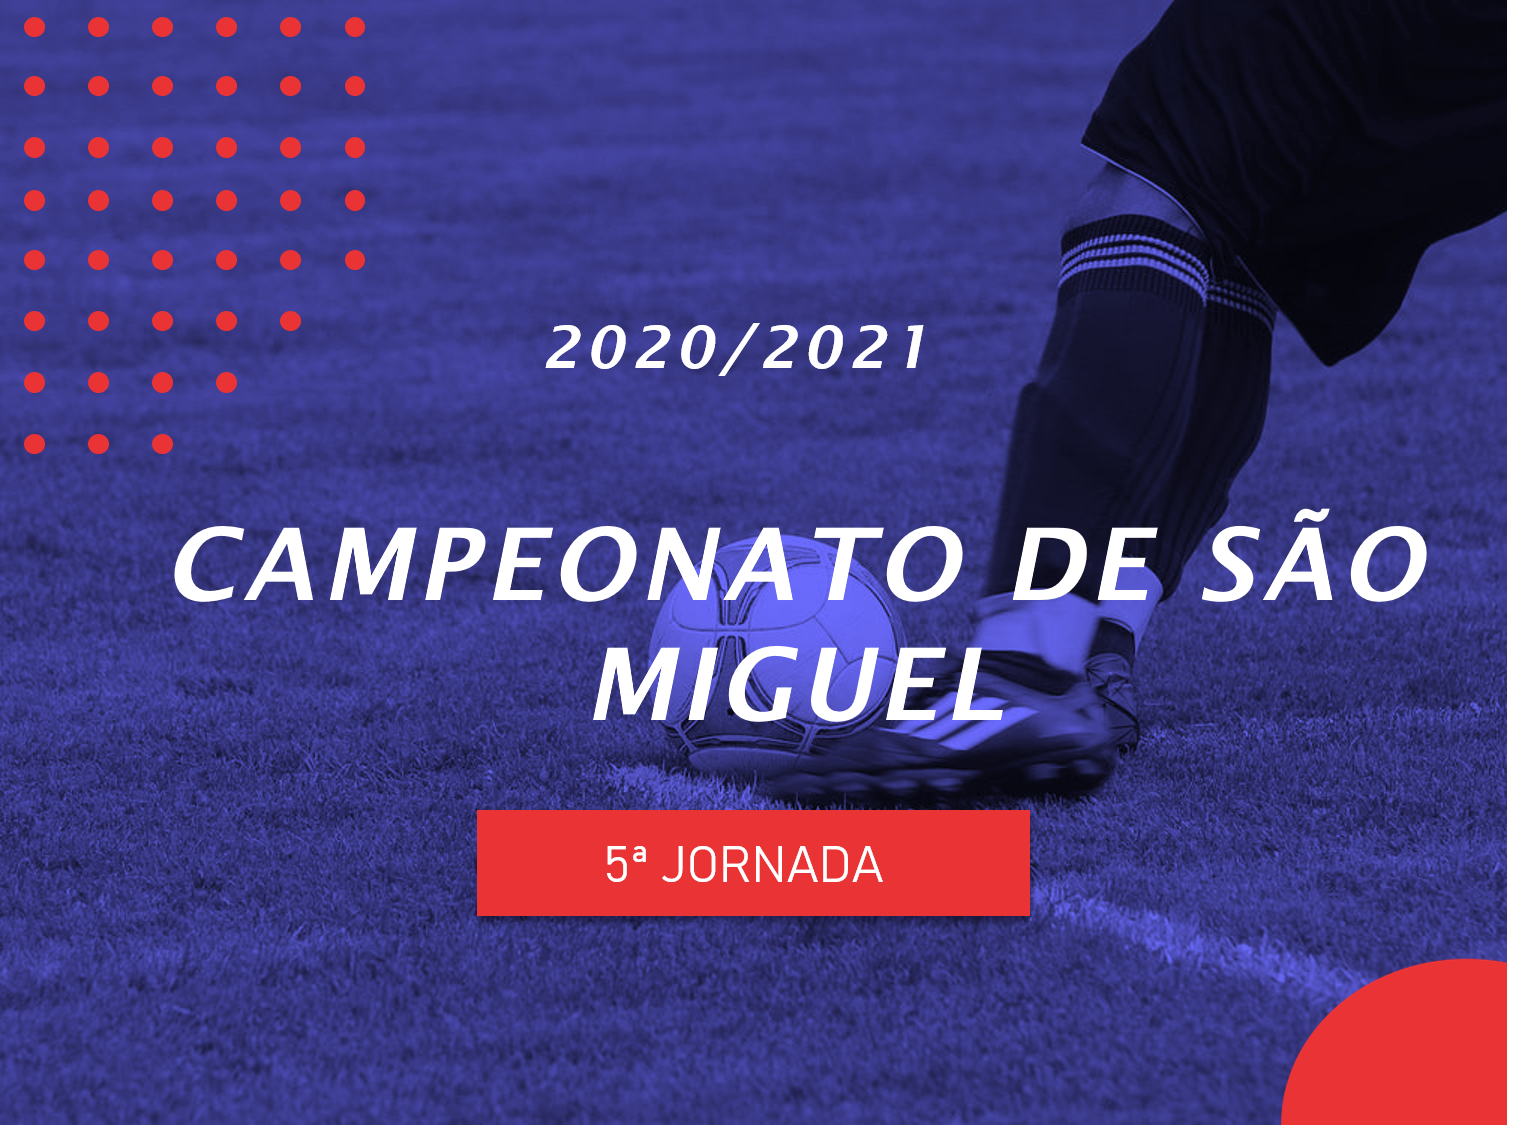 Campeonato de São Miguel - 5ª Jornada - Antevisão